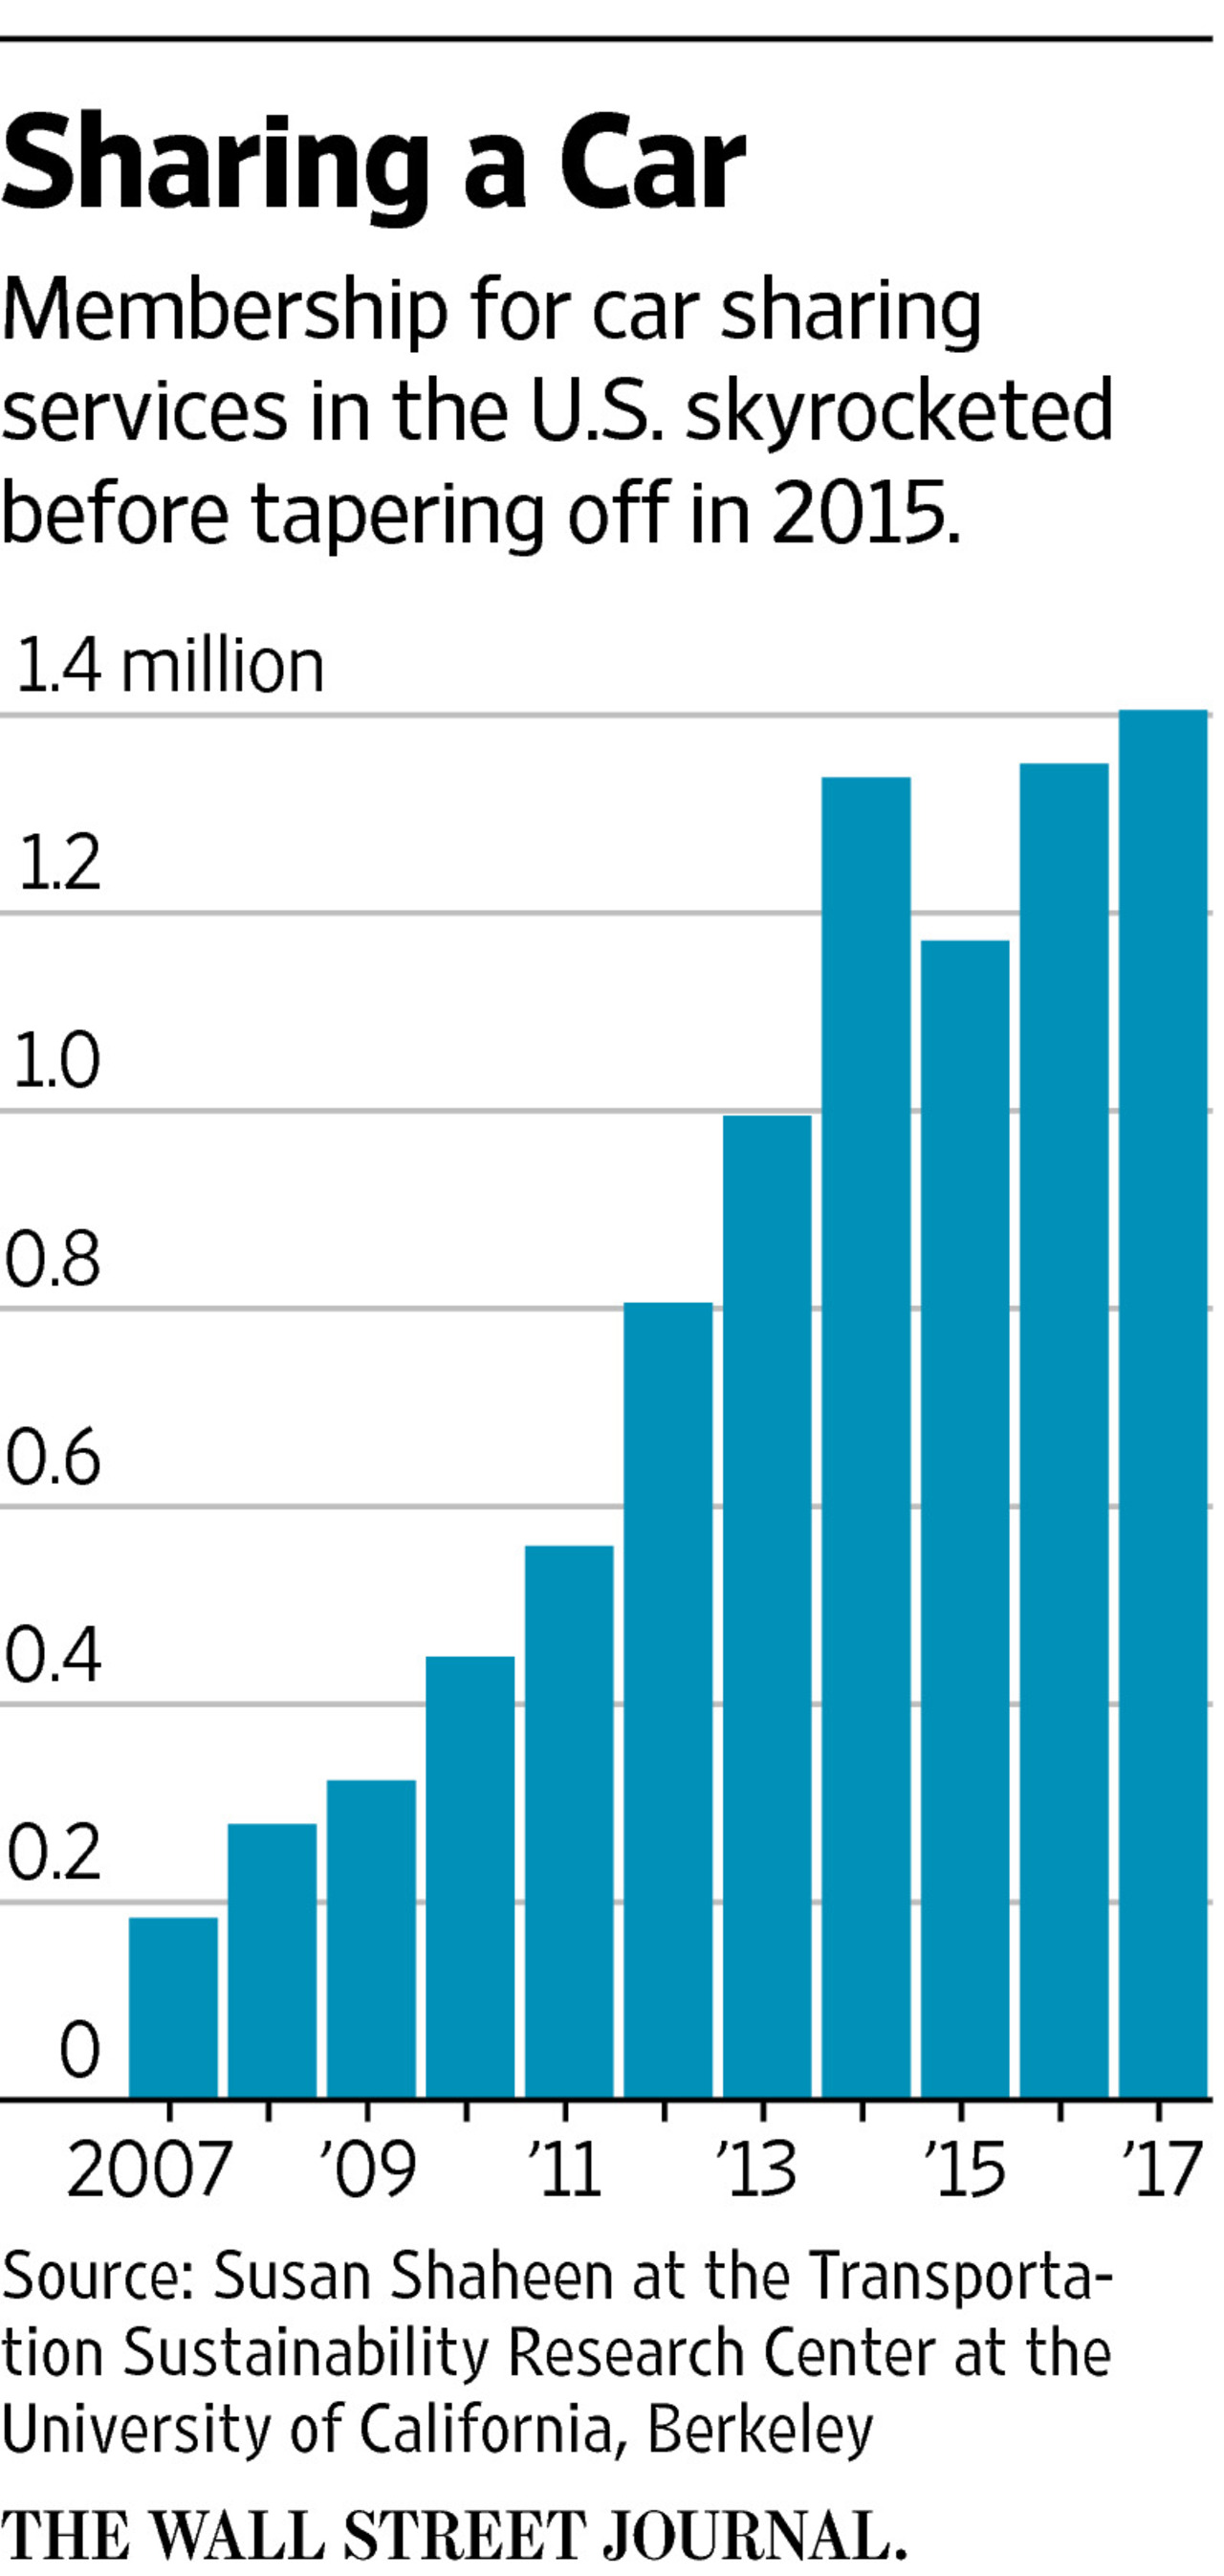 美国共享汽车服务的会员数量在2015年前猛增，但随后增速放缓。